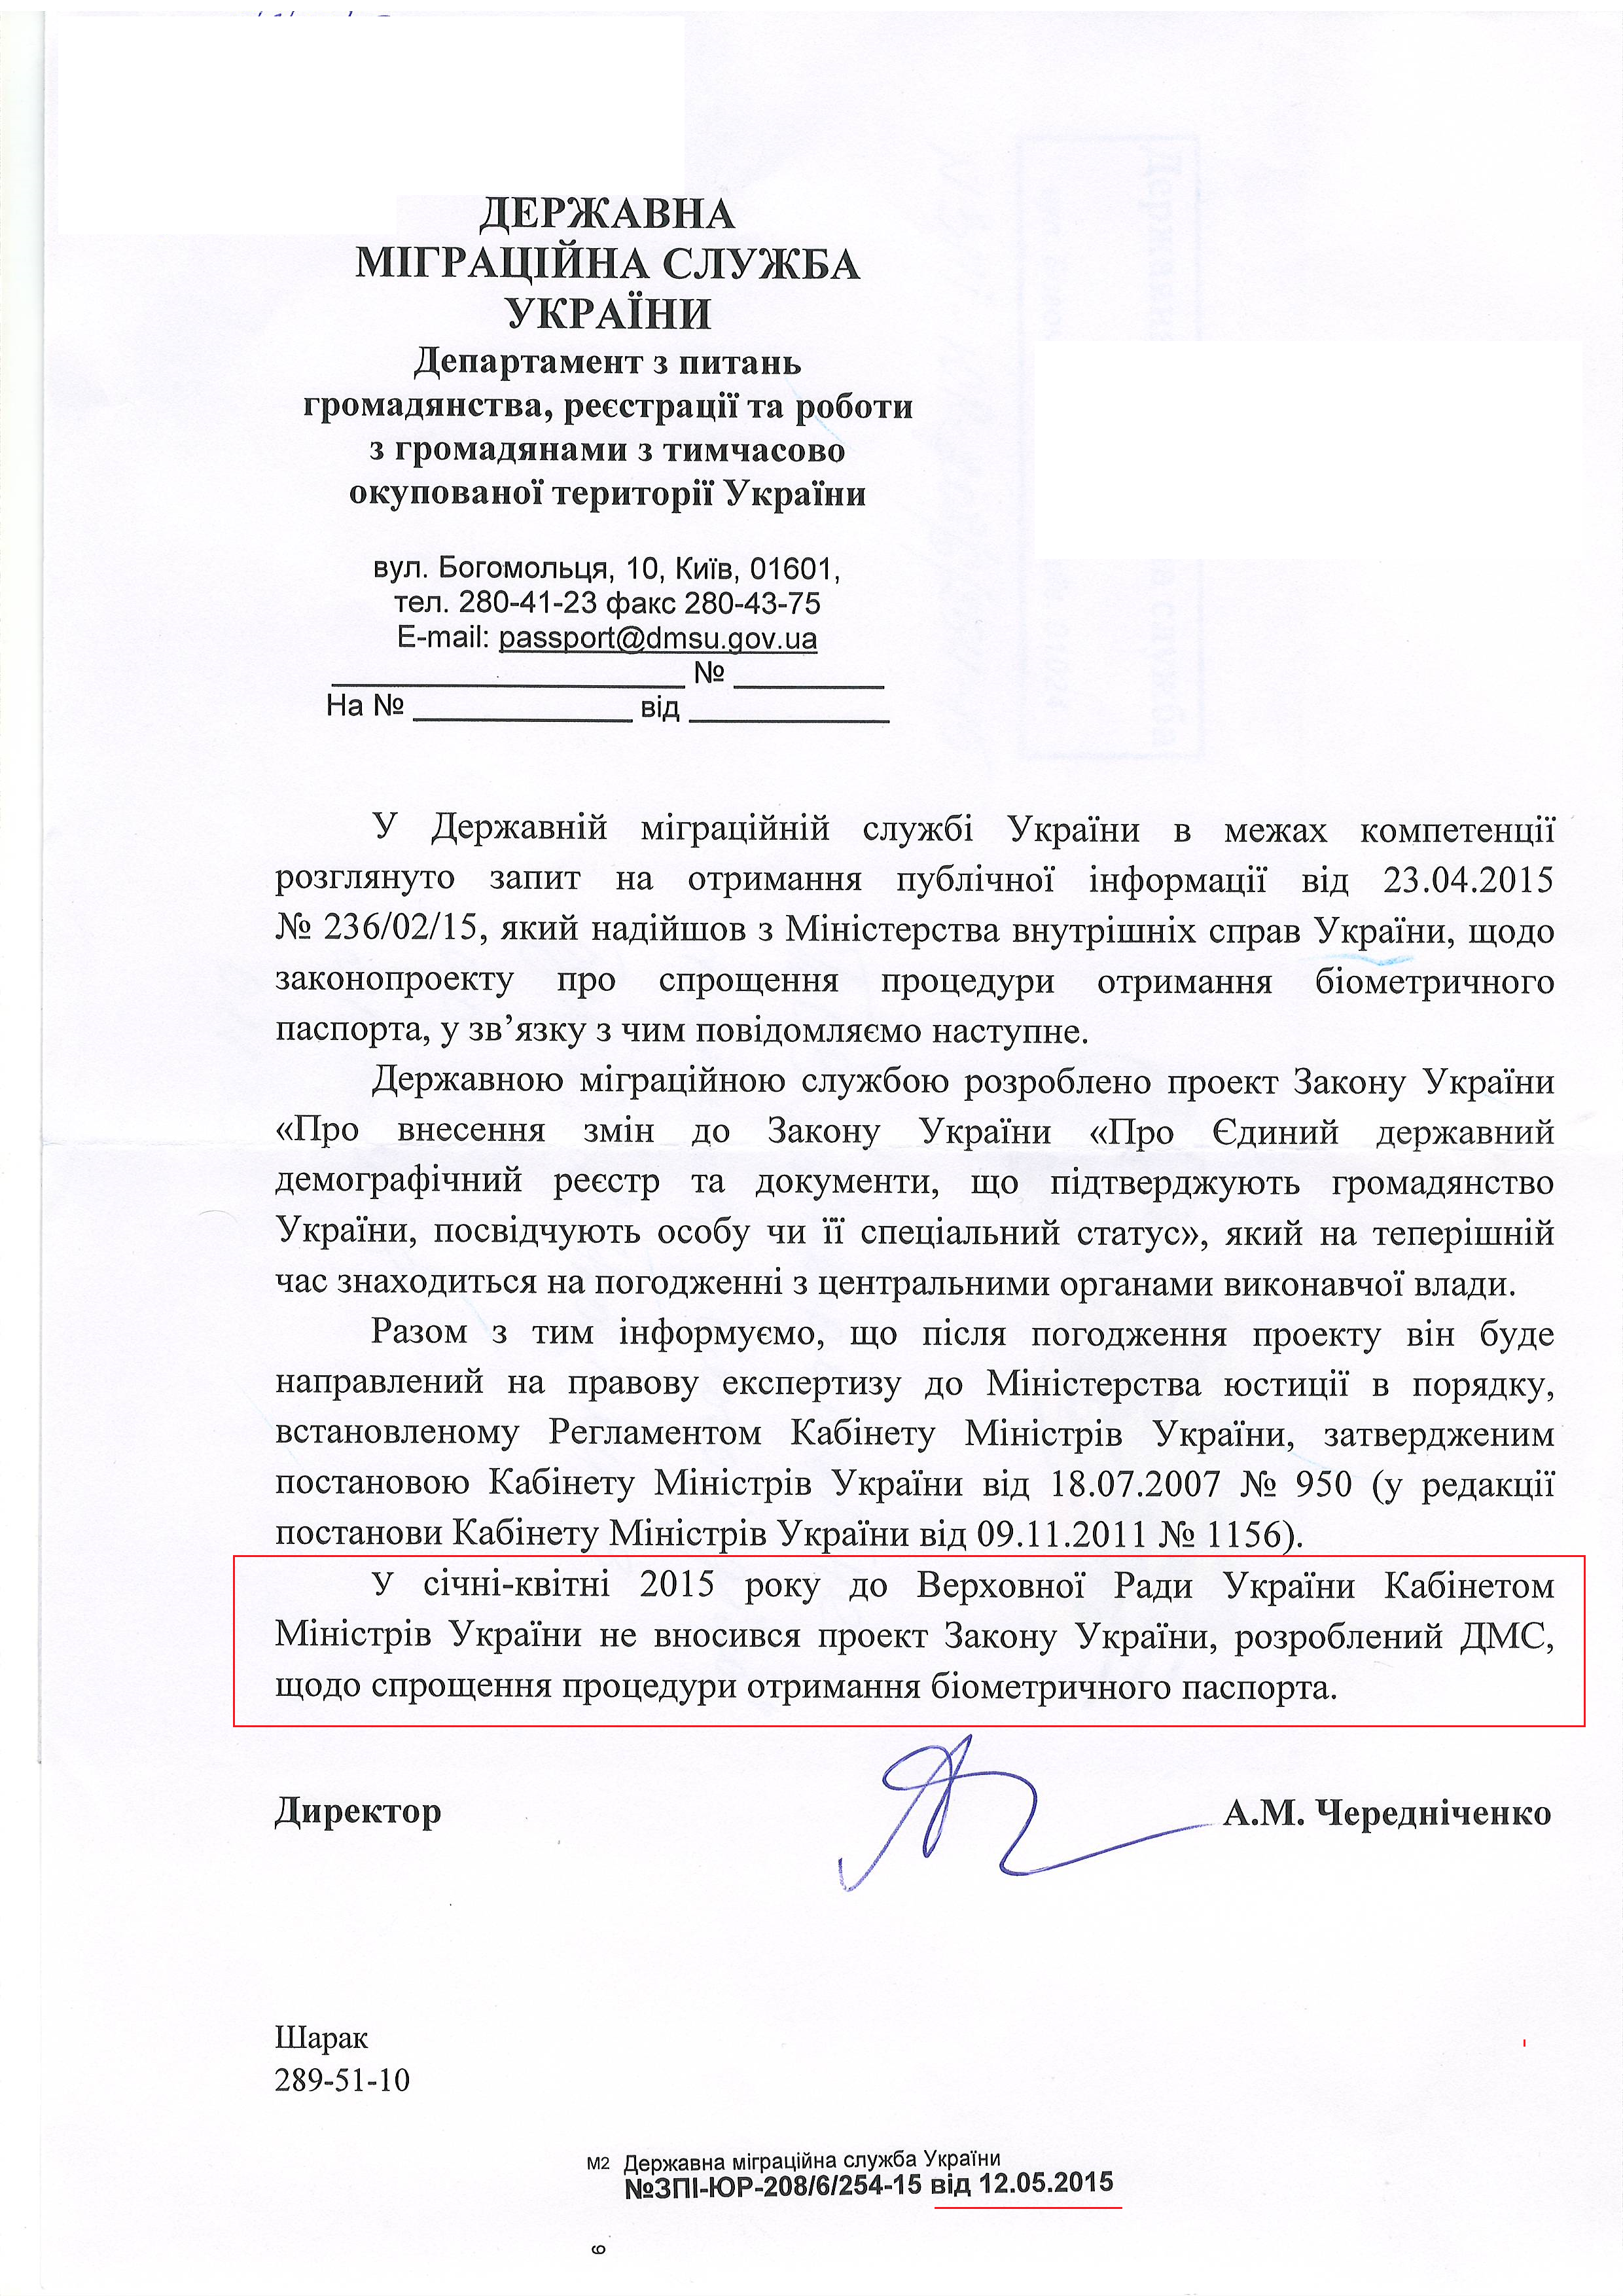 Лист державної міграційної служби України від 12 травня 2015 року